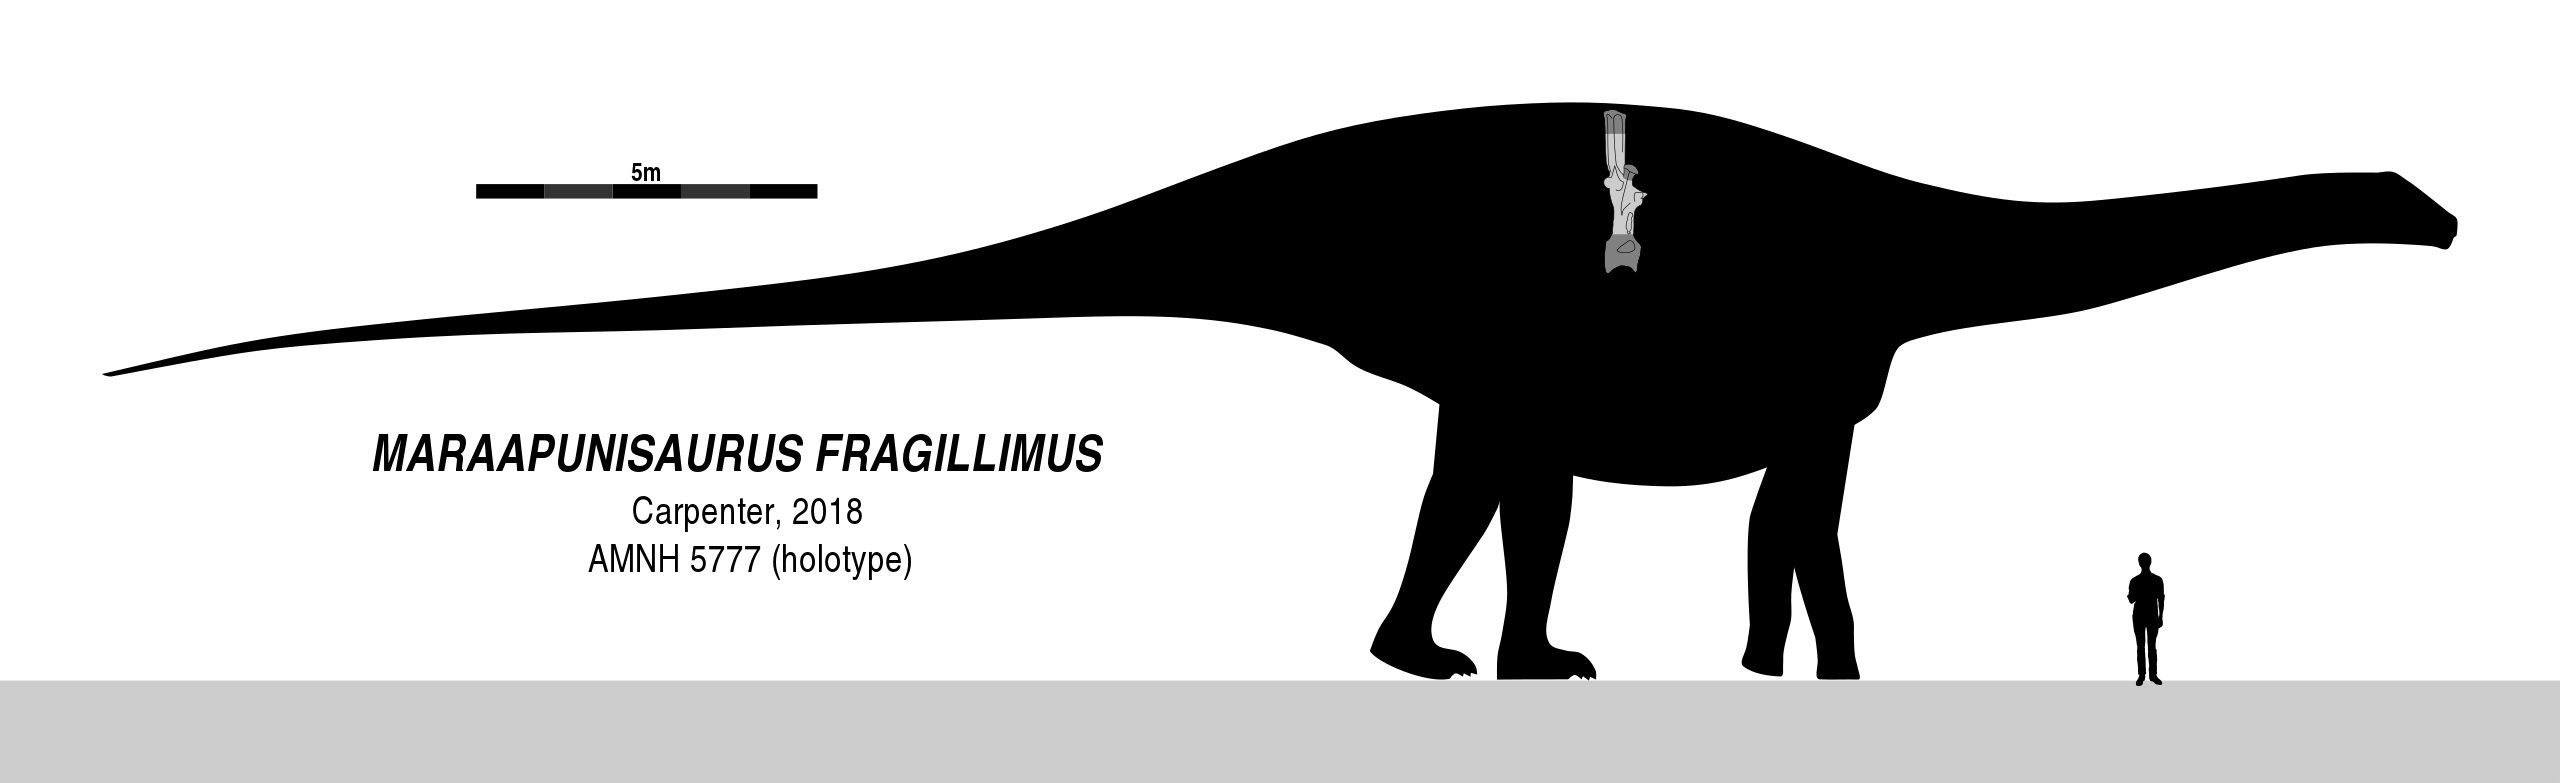 Jedním z nejhmotnějších sauropodů a tím i suchozemských živočichů vůbec mohl být severoamerický rebbachisaurid druhu Maraapunisaurus fragillimus, který byl prvních 140 let od svého objevu znám pod vědeckým jménem Amphicoelias fragillimus. I když půvo